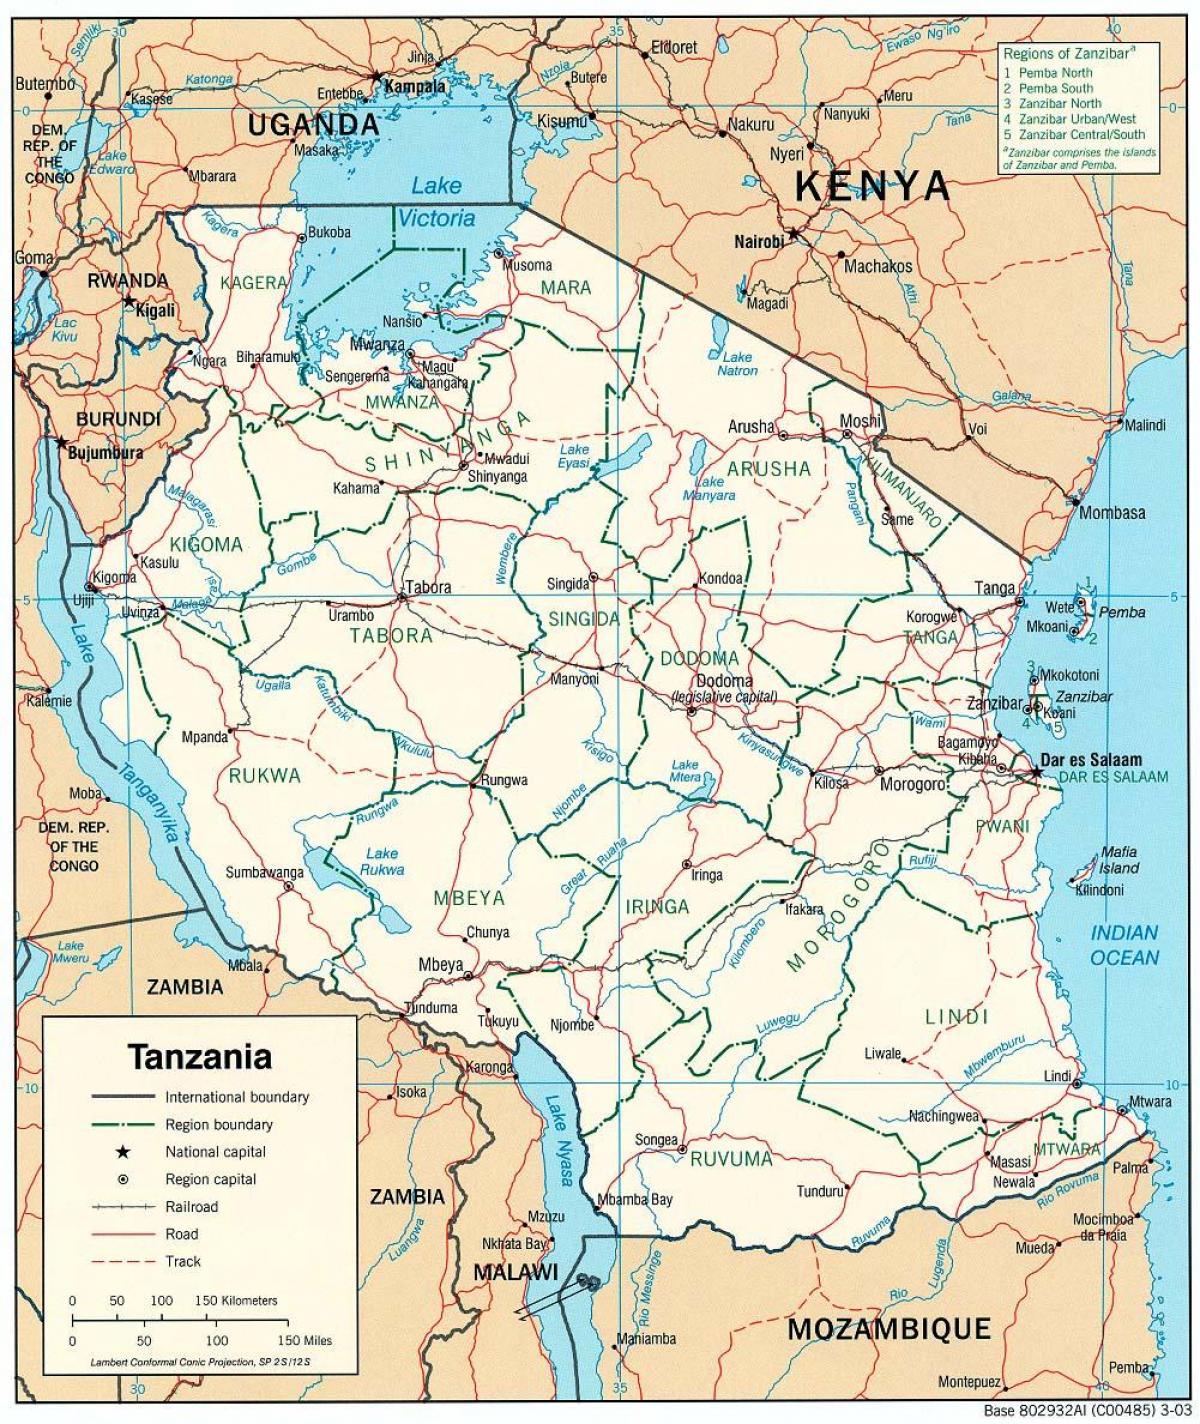 kort over tanzania med byer